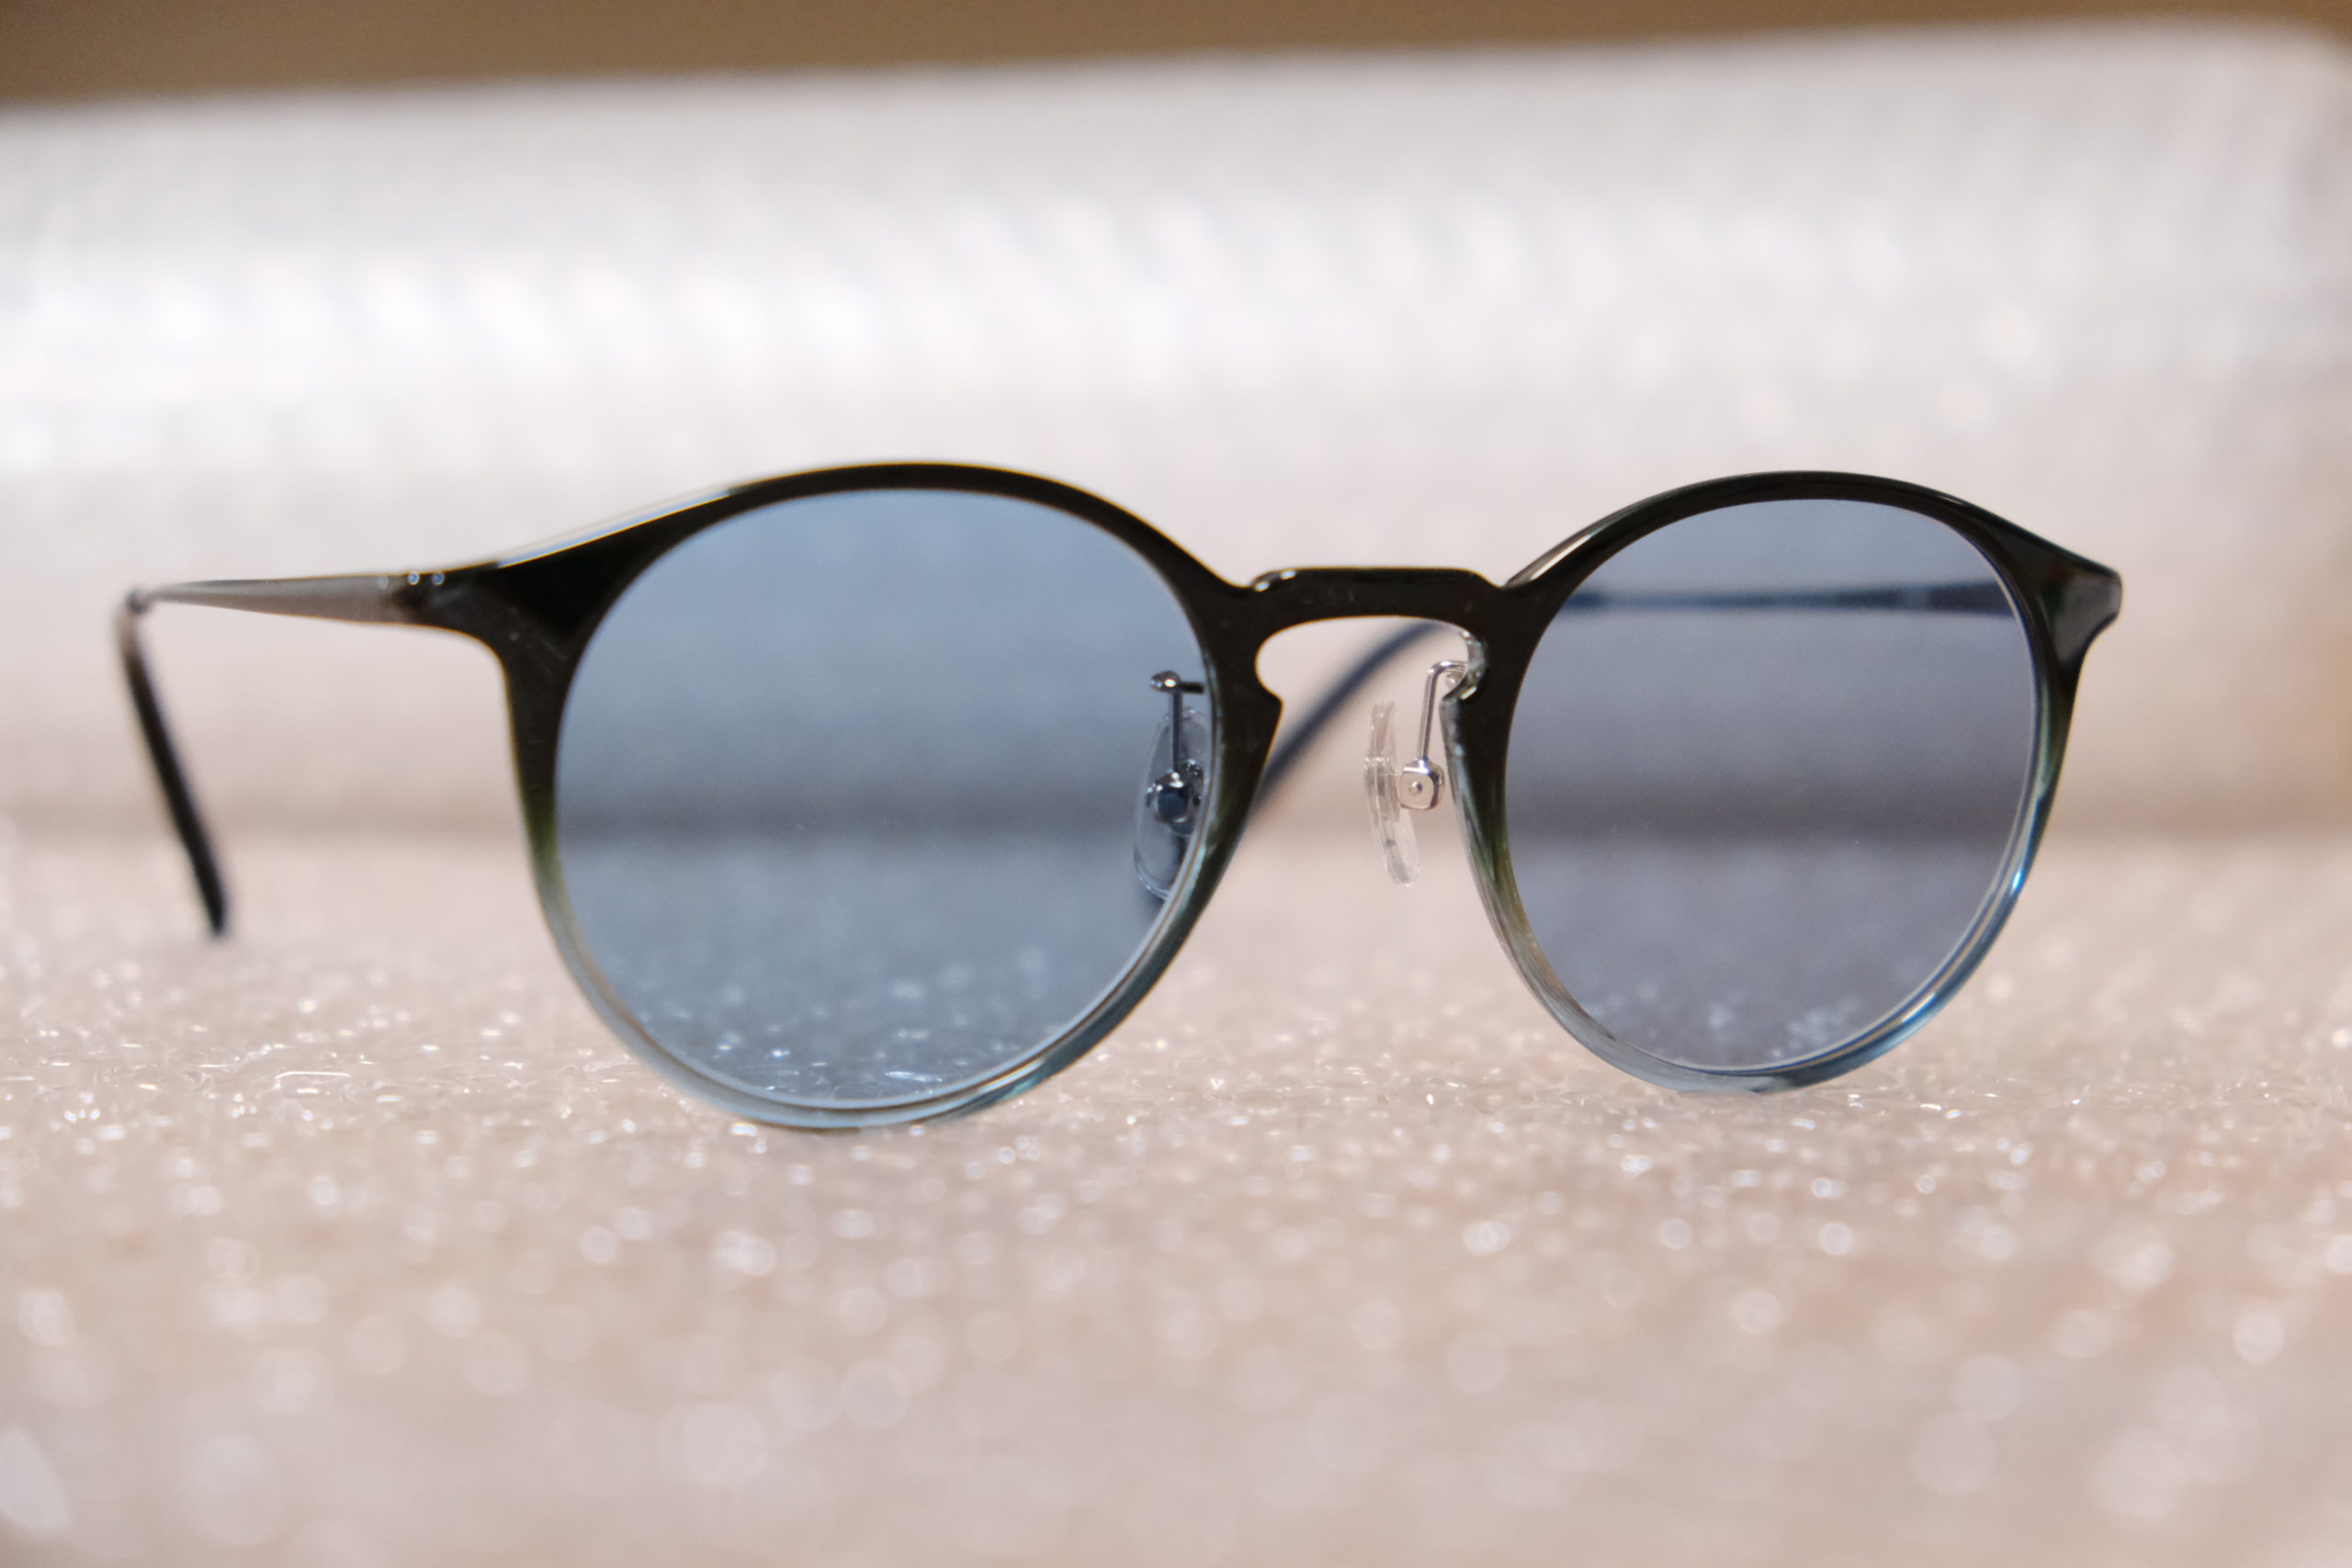 イノチグラスのイエローとシルバーの2種類を組み合わせたレンズのメガネ